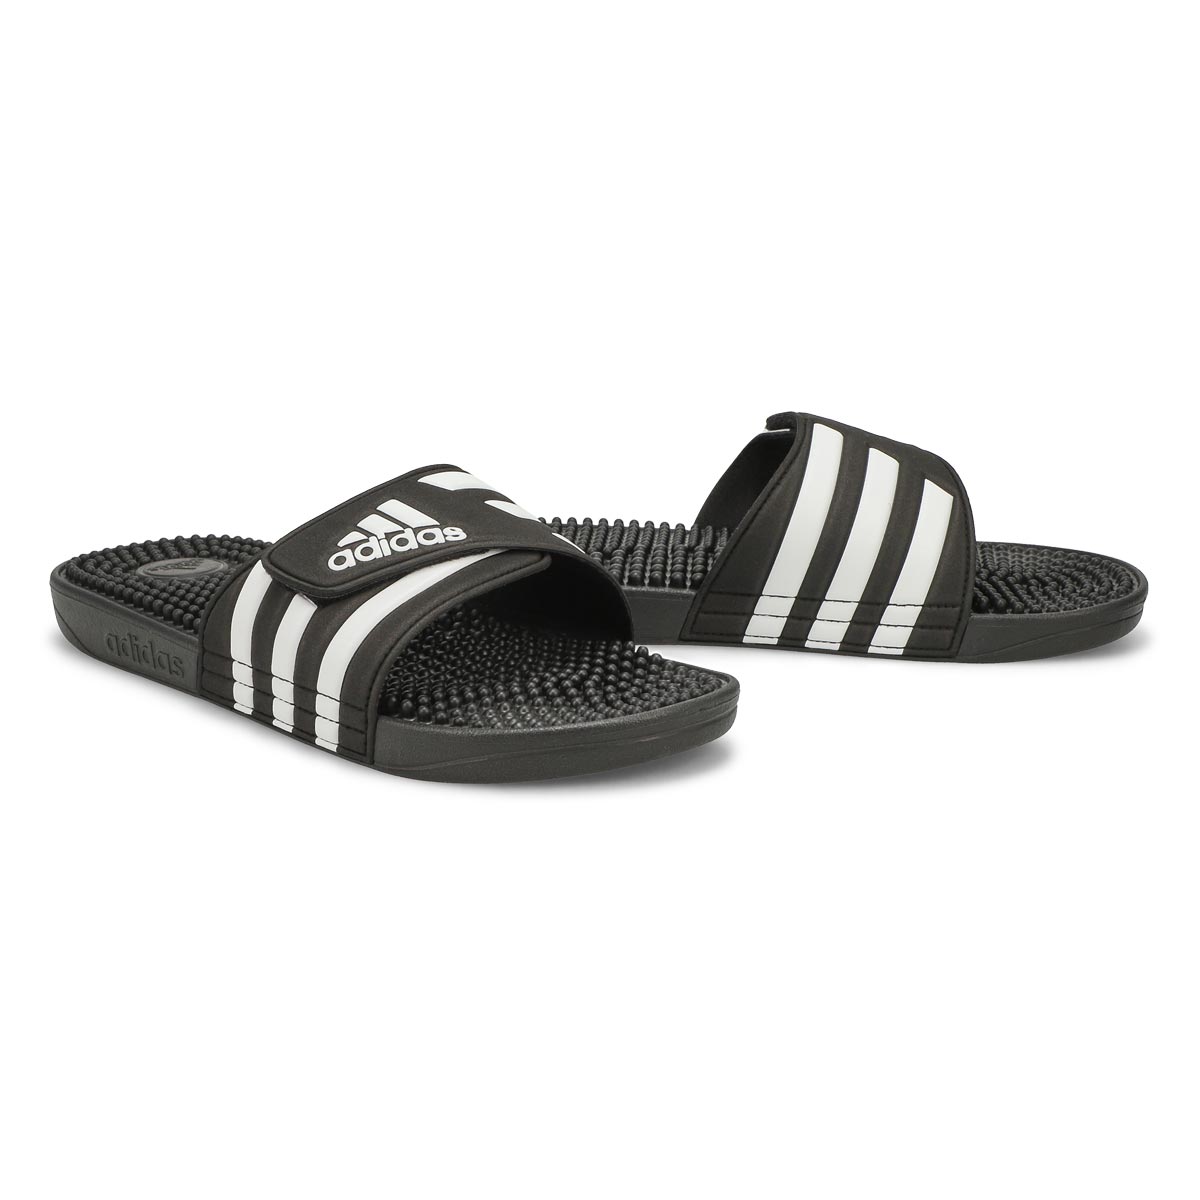 Men's Adissage Slide Sandal - Black/White